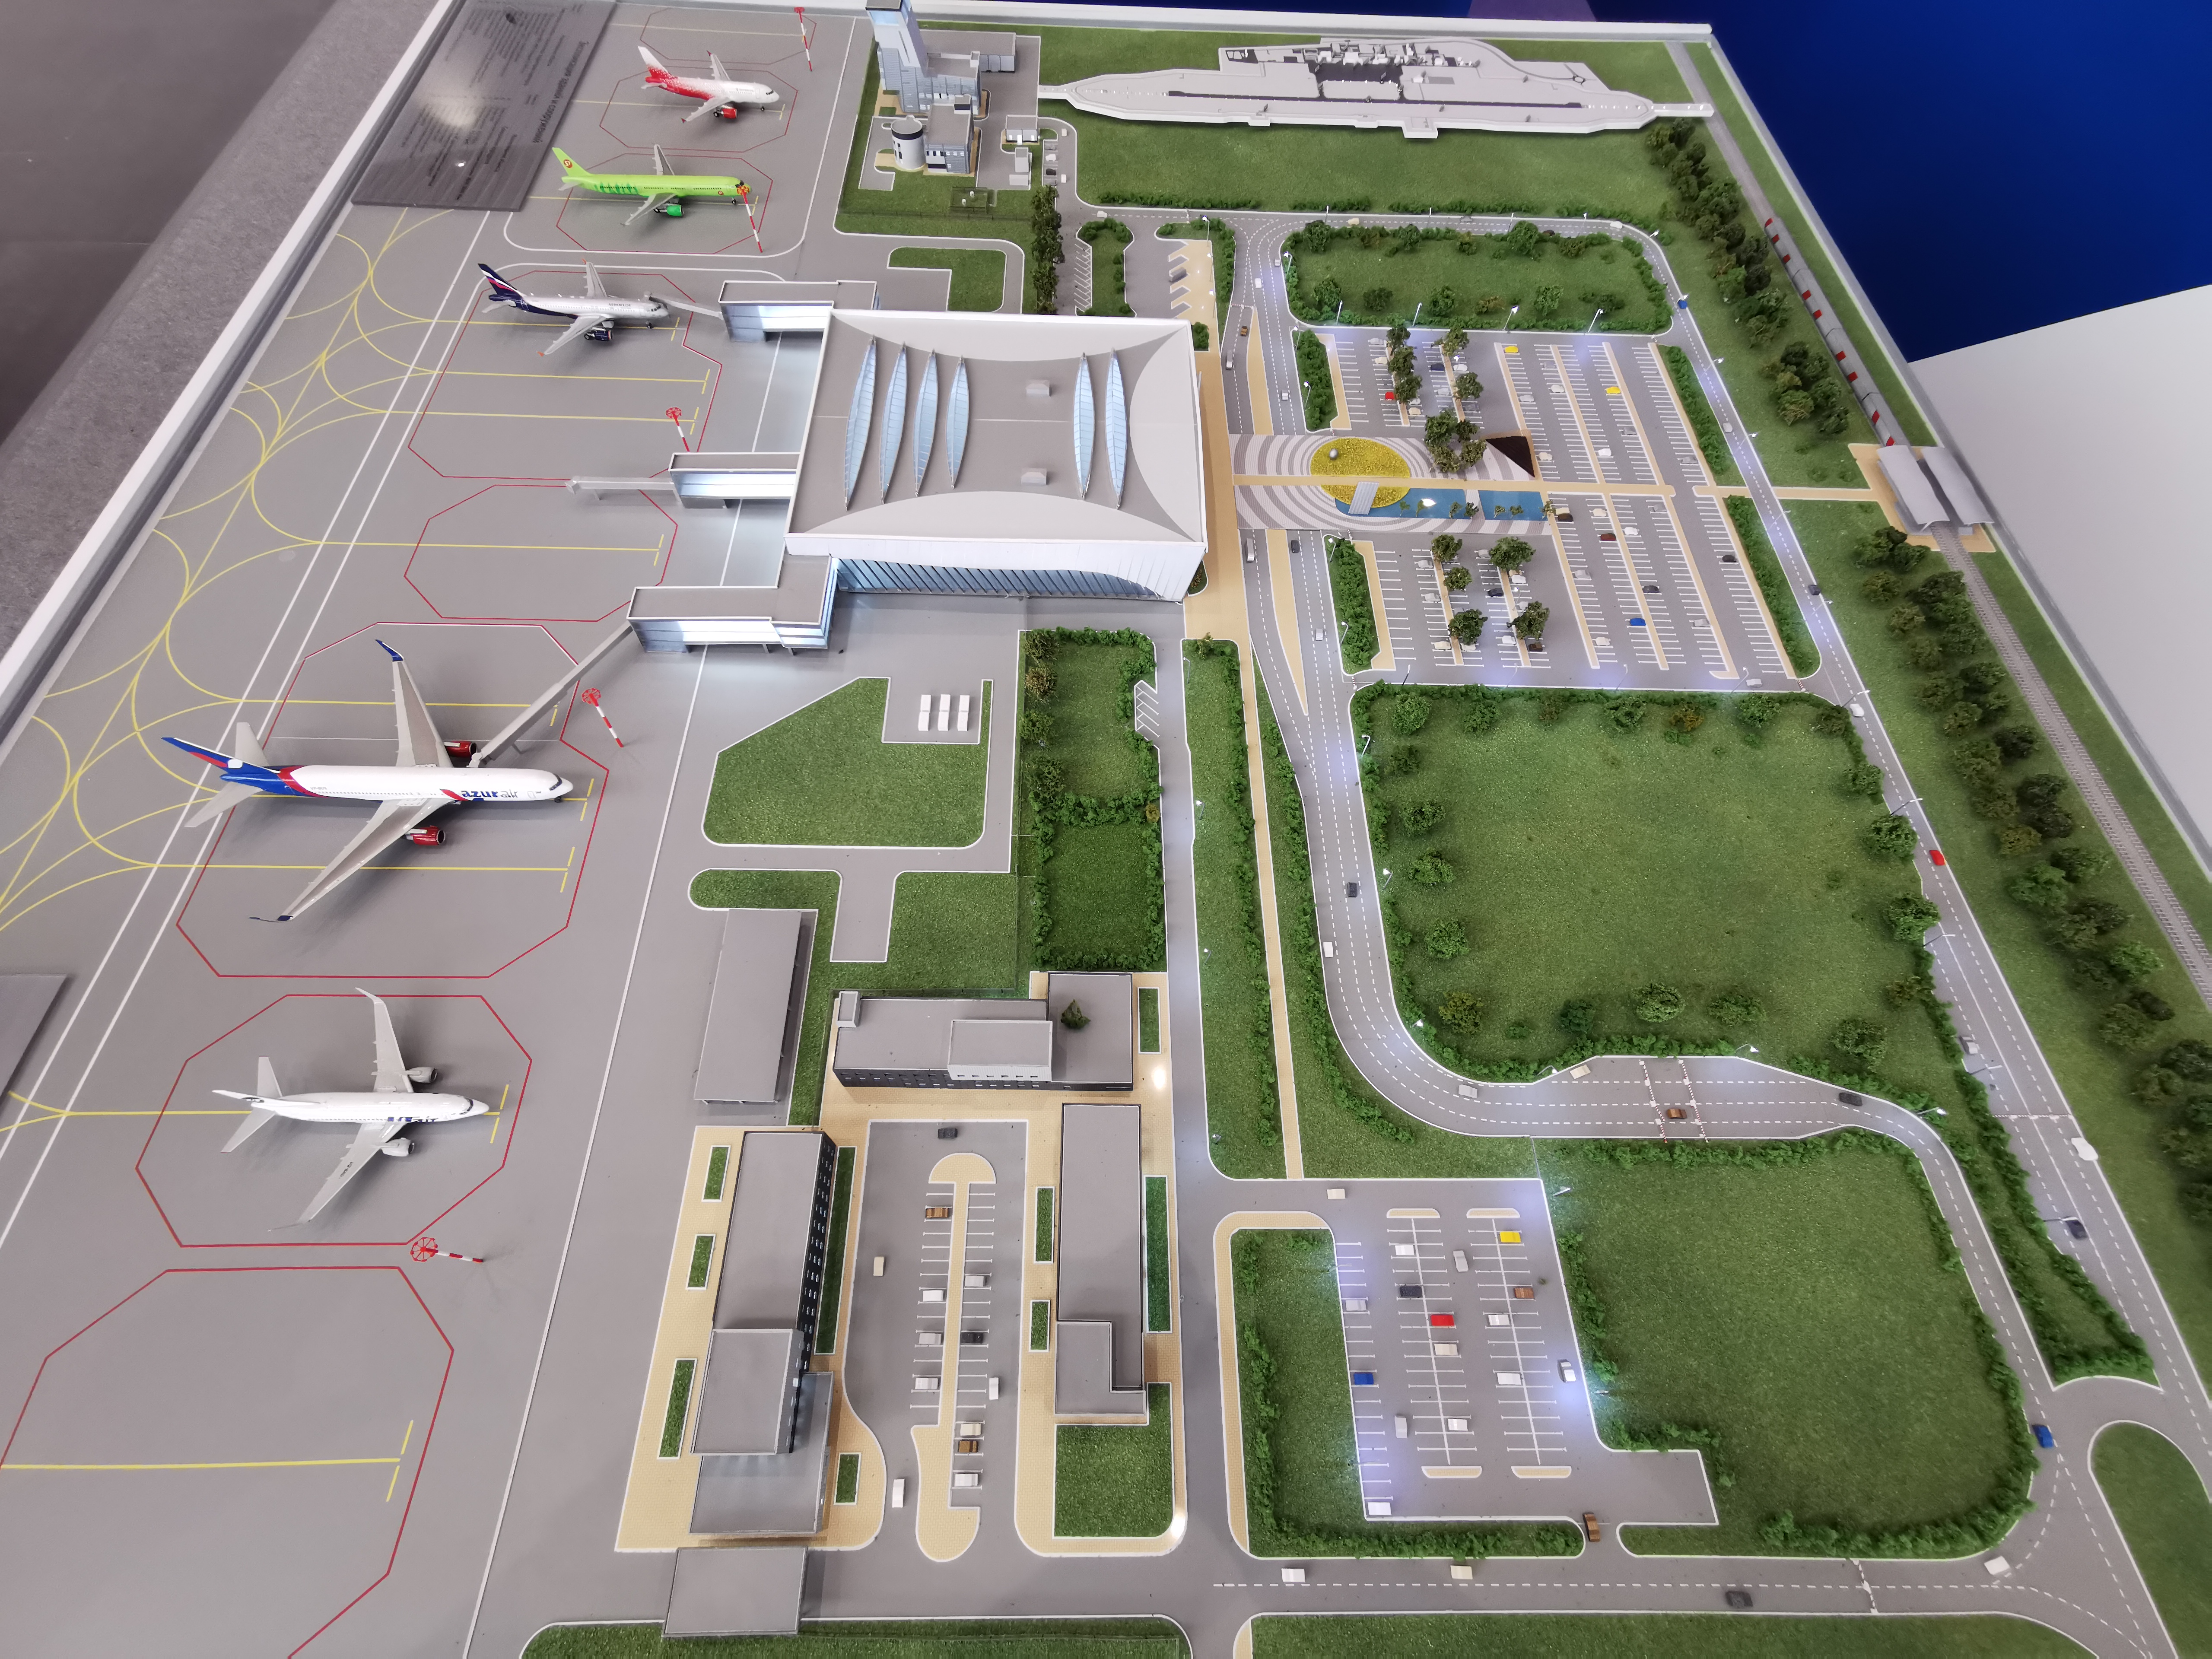 Саратов аэропорт гагарин план